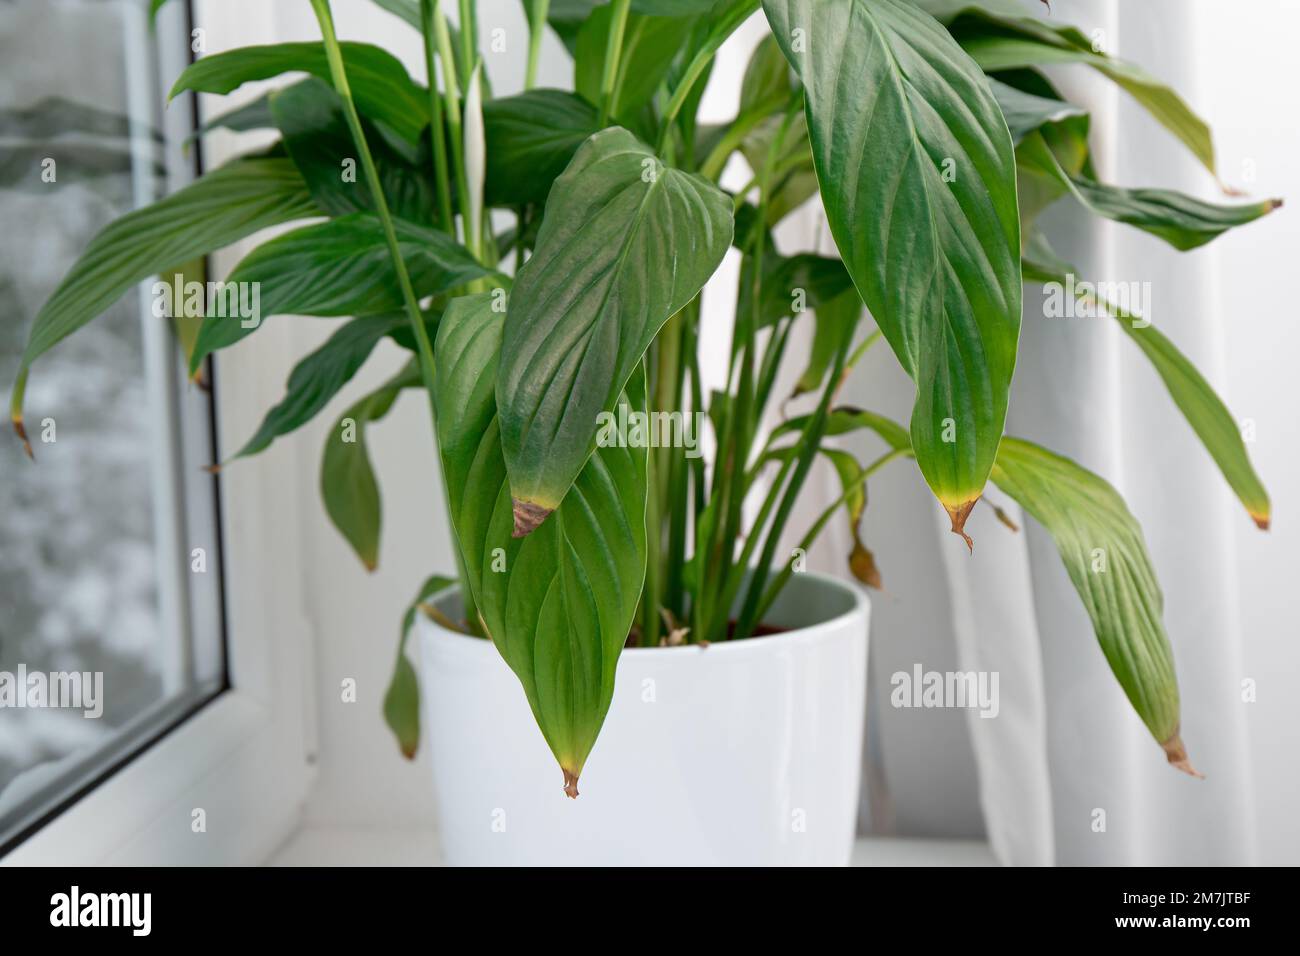 Houseplant Spathiphyllum comunemente noto come spath o peace gigli foglie punte che diventano marrone. Le cause possono essere un'eccessiva innaffiatura, temperature estreme. Foto Stock